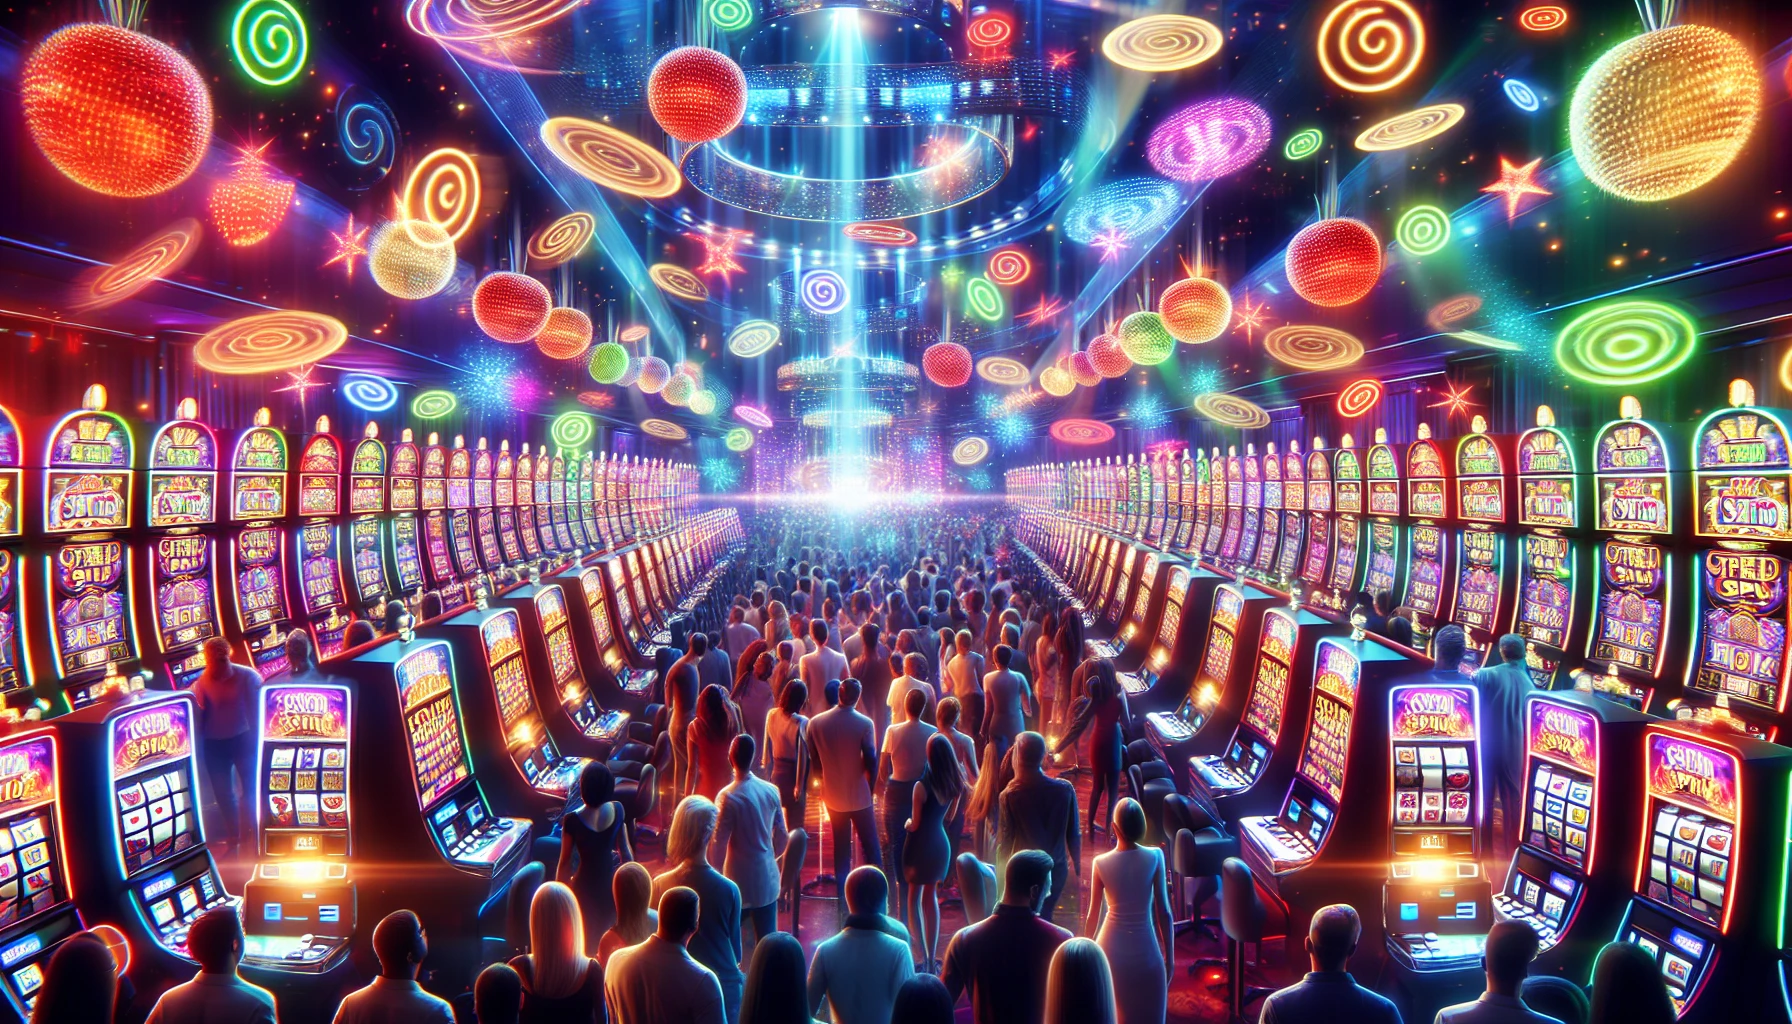 Иллюстрация казино с игровыми автоматами и символами бесплатных спинов